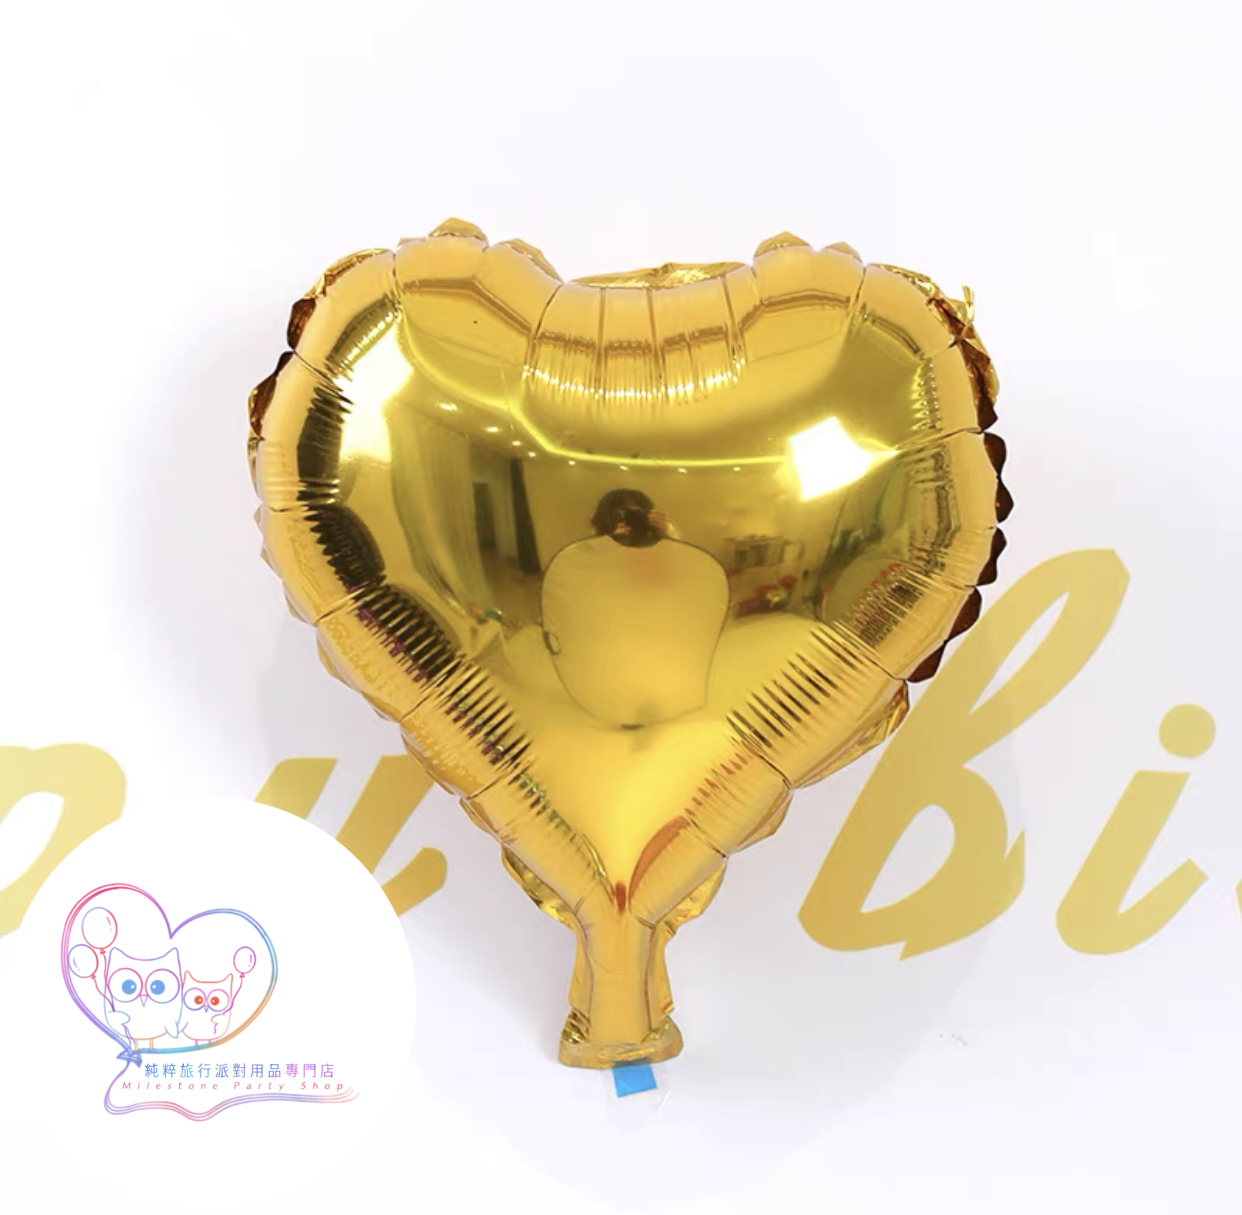 10吋心心鋁膜氣球 (金色) 10H1